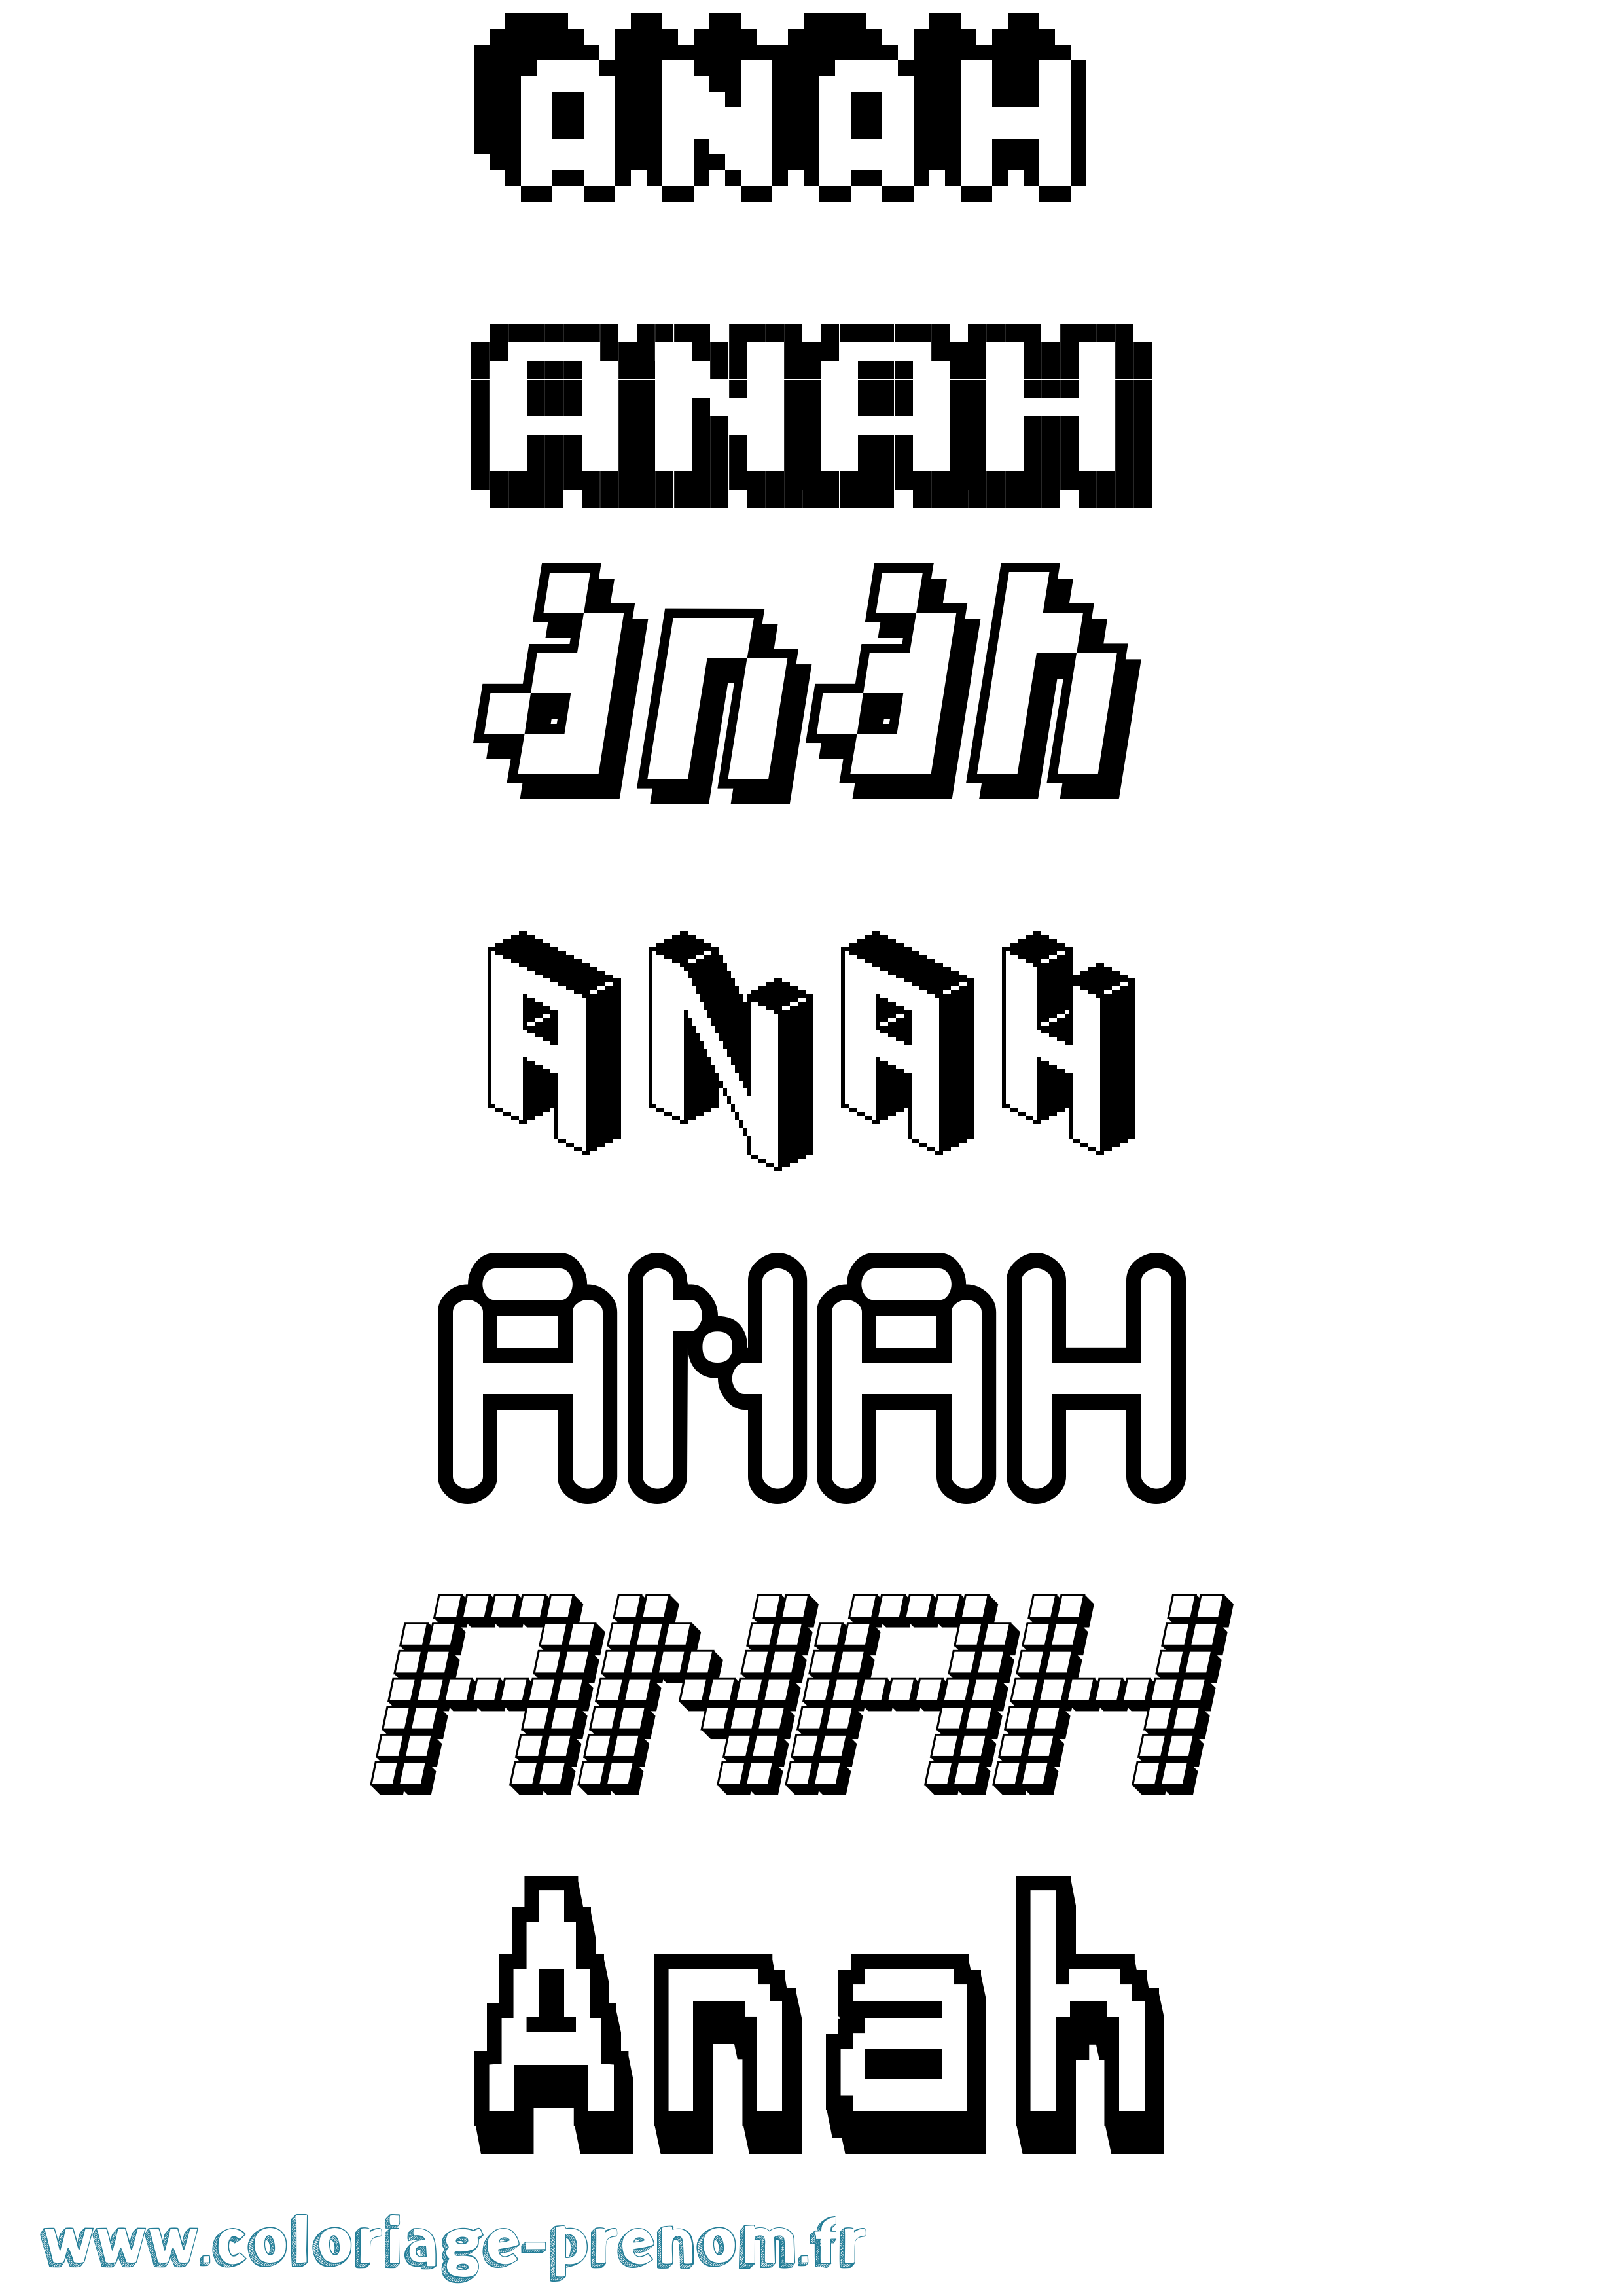 Coloriage prénom Anah Pixel